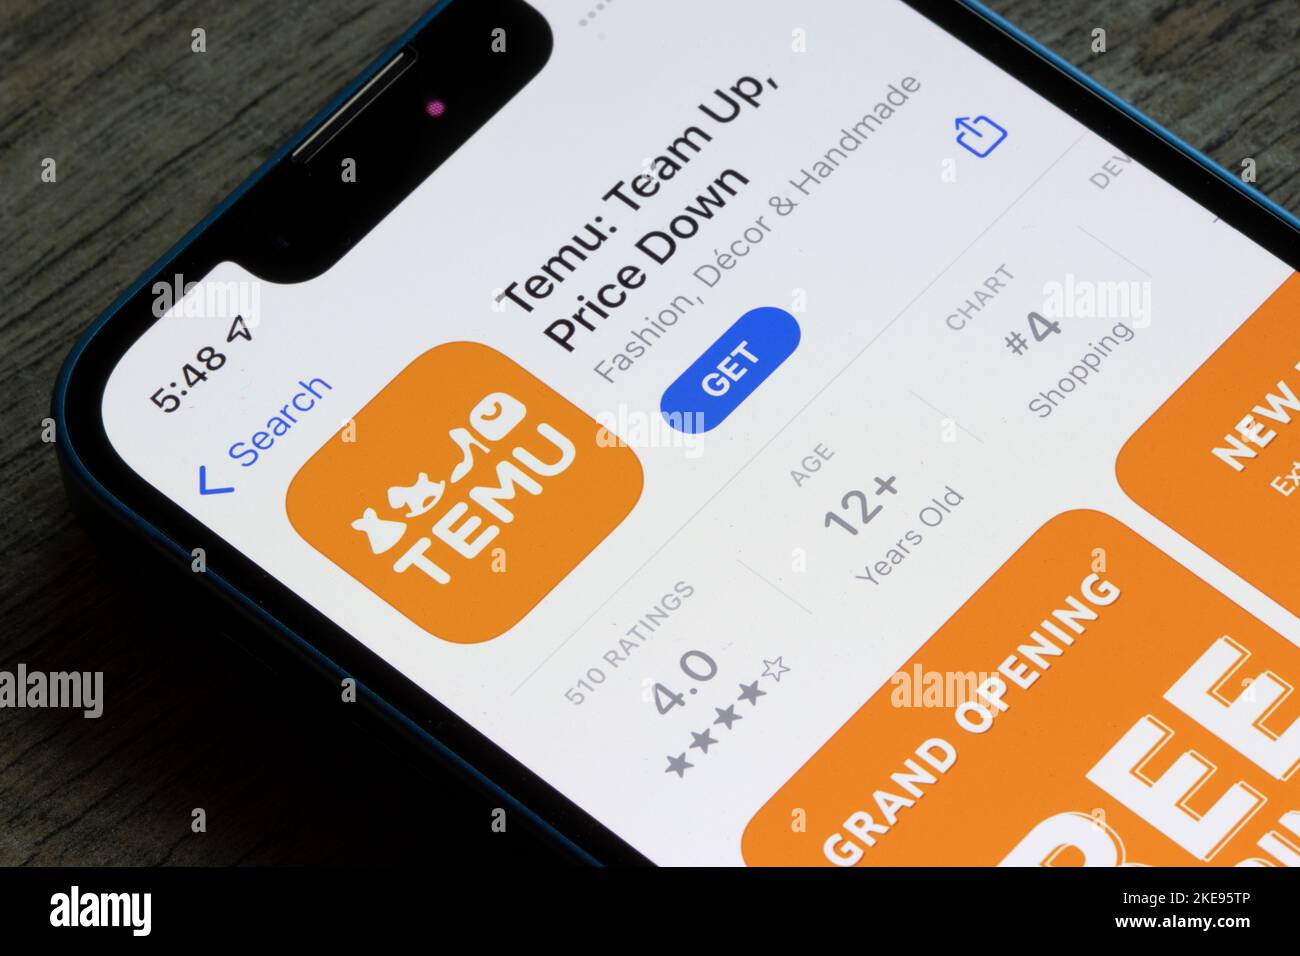 L'app Temu è visibile nell'App Store di un iPhone. Temu è un mercato online e una consociata della piattaforma di e-commerce Pinduoduo con sede in Cina. Foto Stock